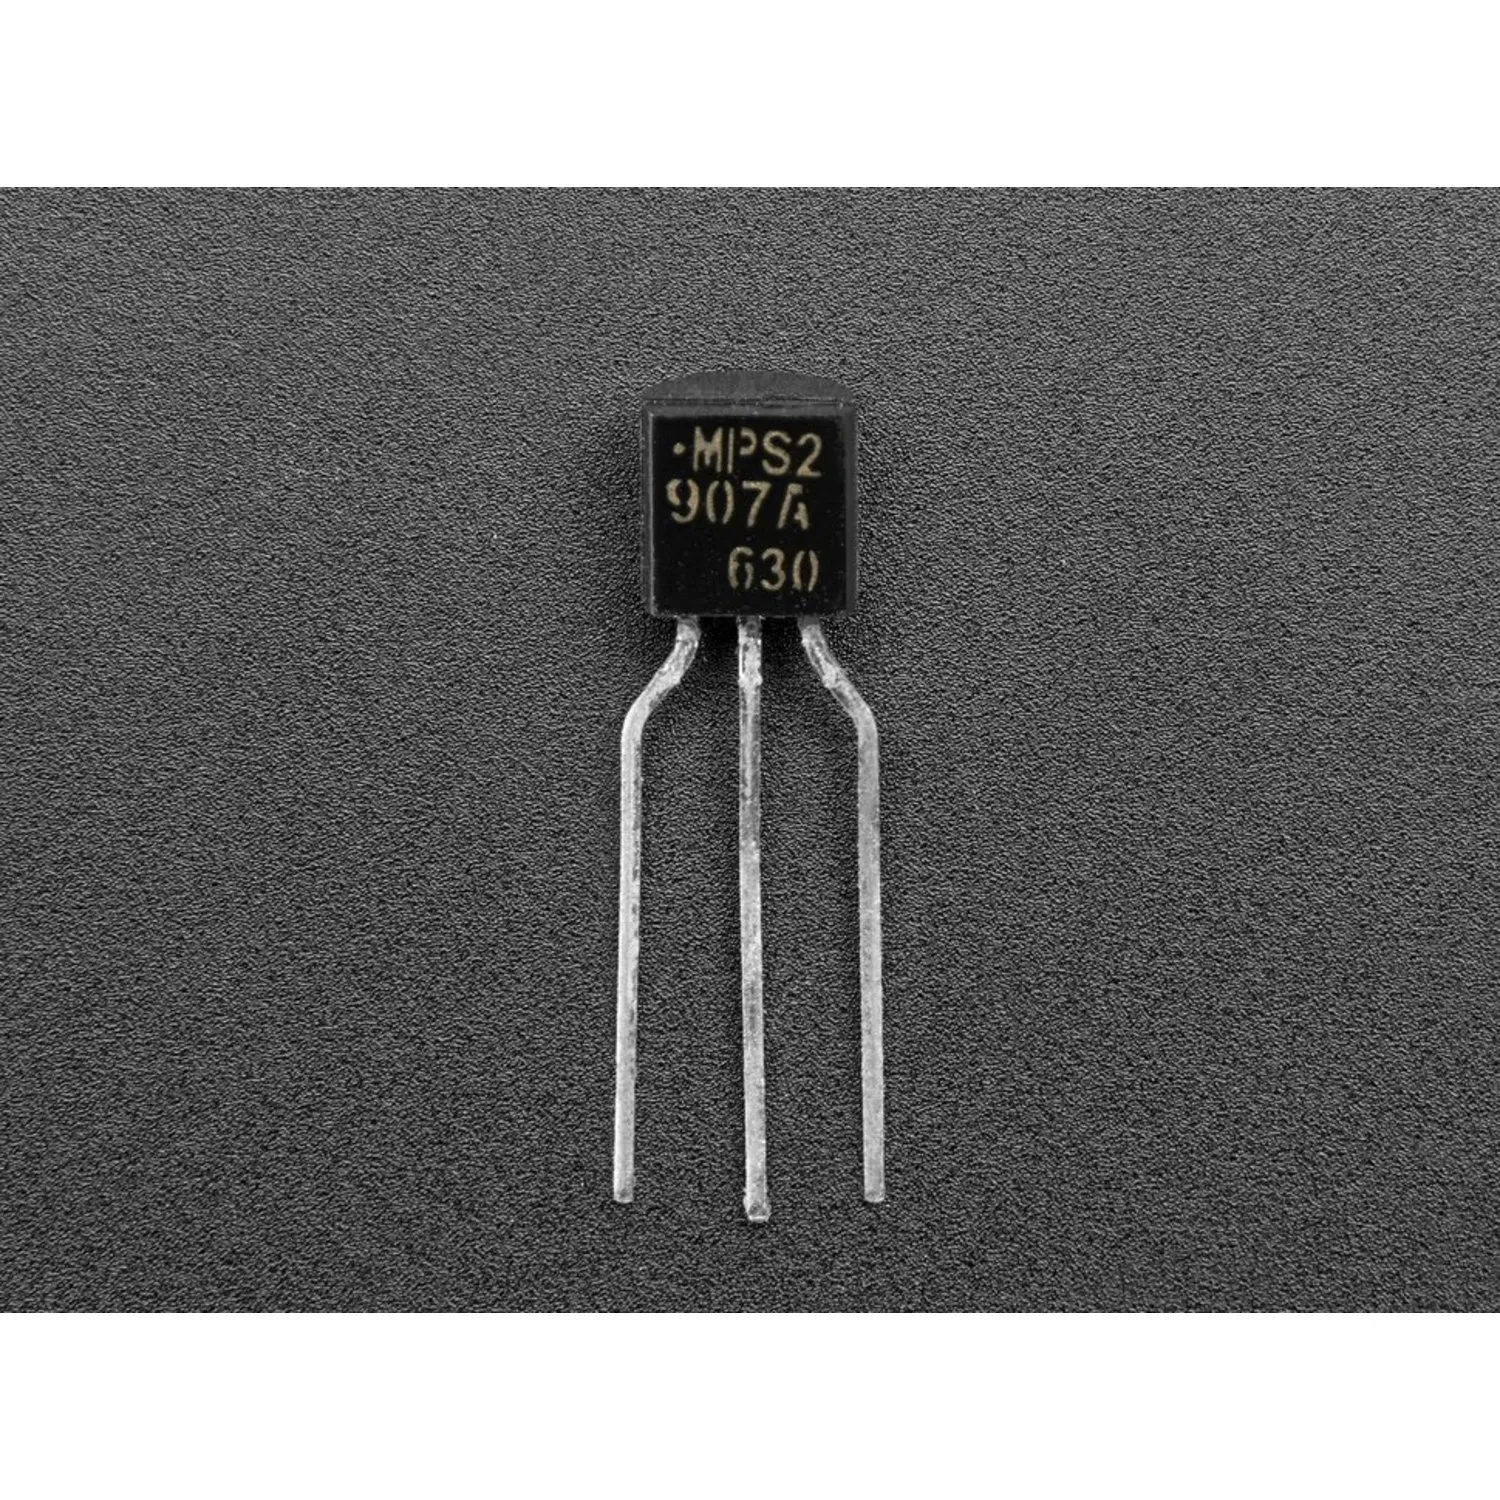 Photo of PNP Bipolar Transistors (PN2907) - 10 pack